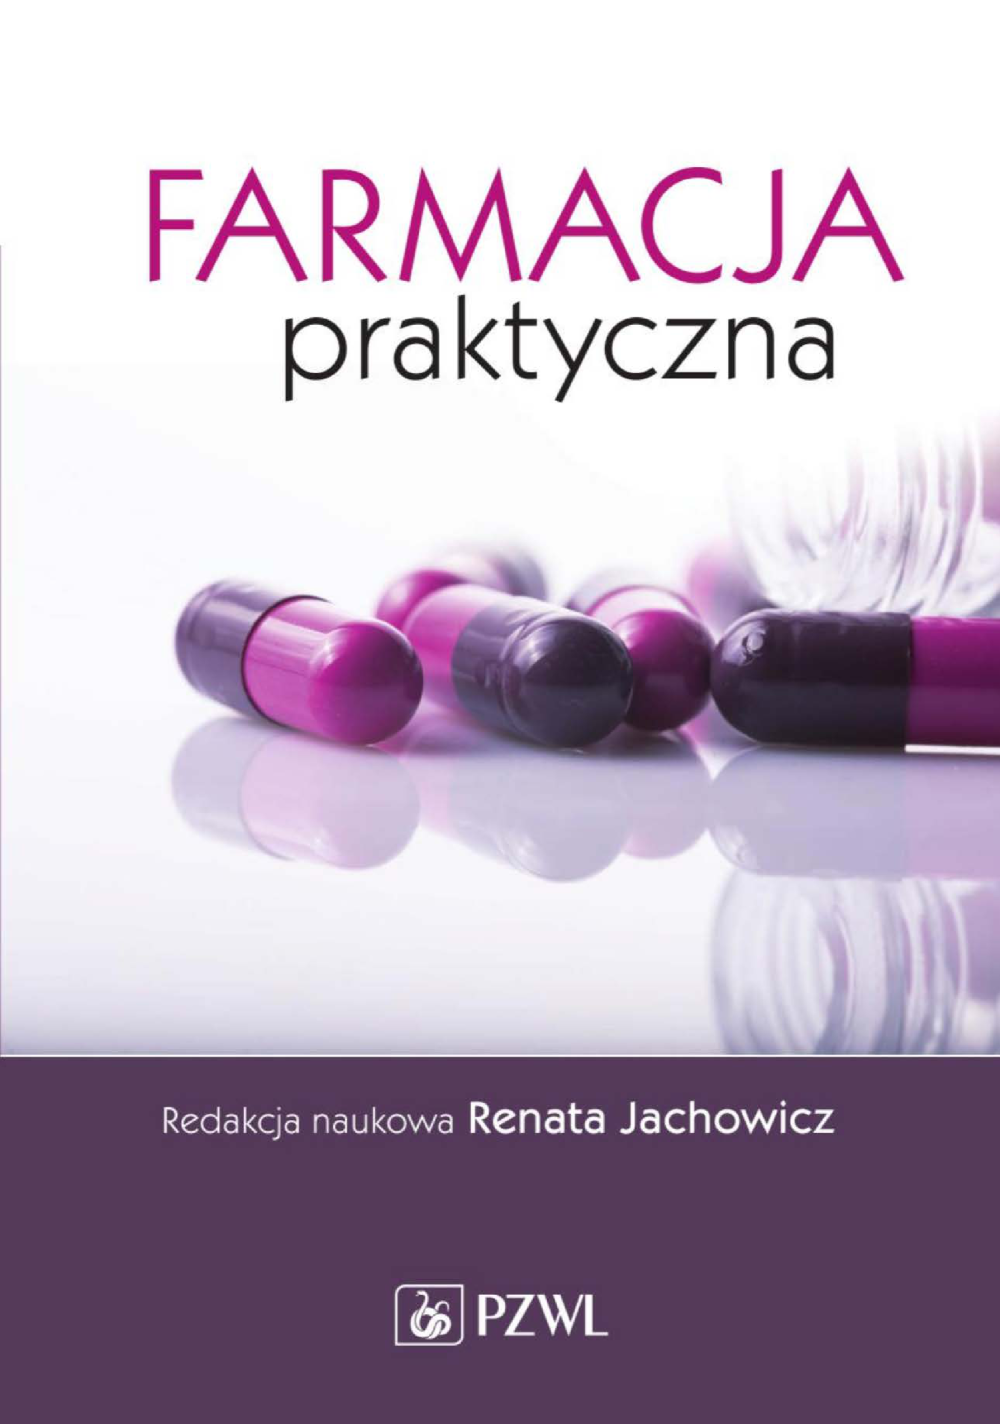 Farmacja Praktyczna Jachowicz Pobierz Pdf Z Docer Pl